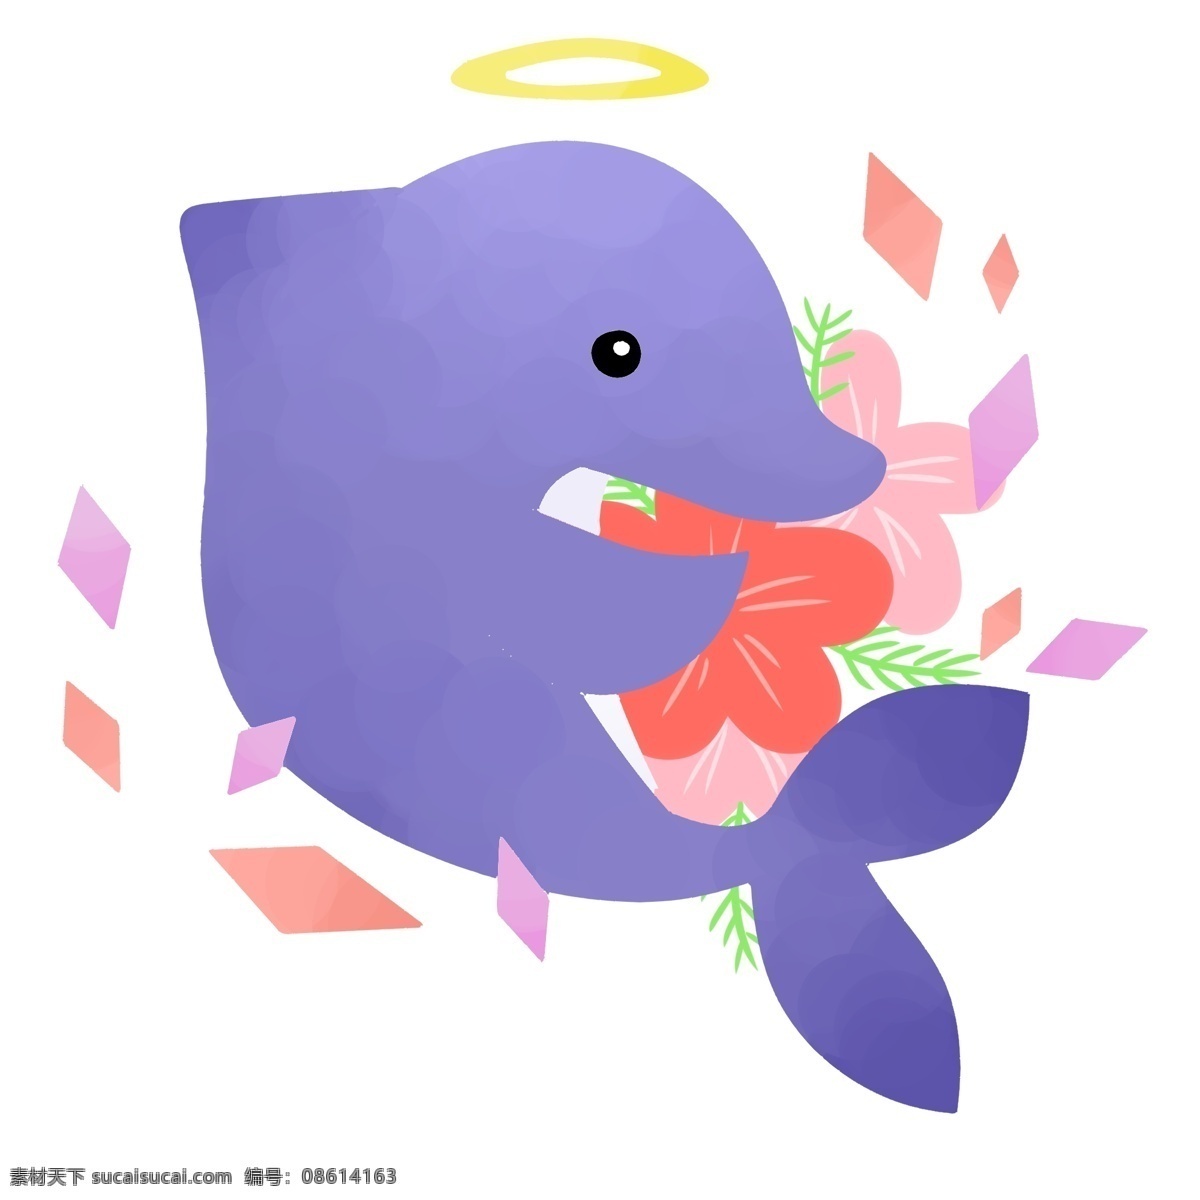 清新 可爱 卡通 日 系 唯美 植物 鱼 通用 动物 日系